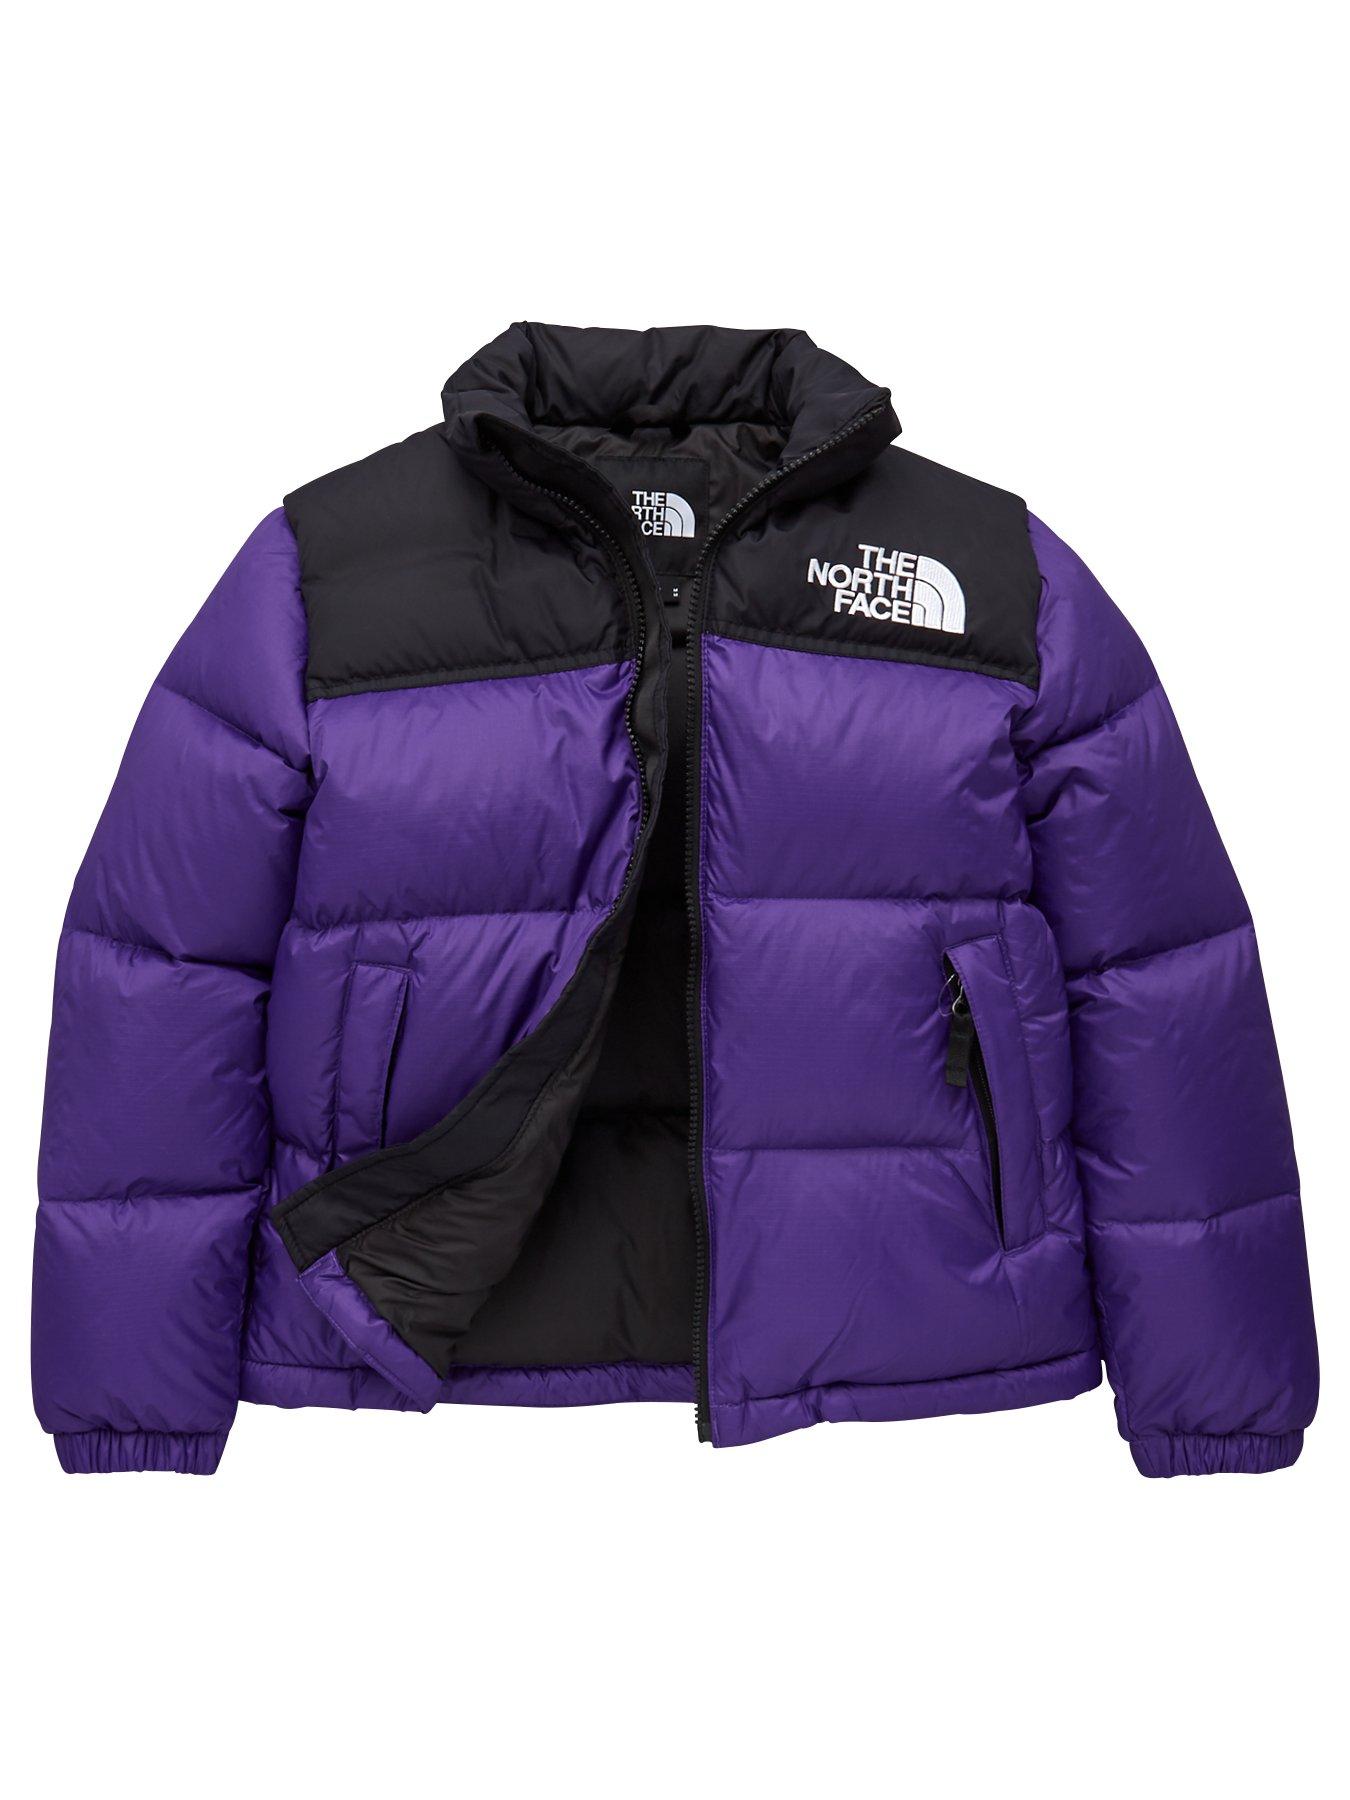 purple nuptse north face jacket